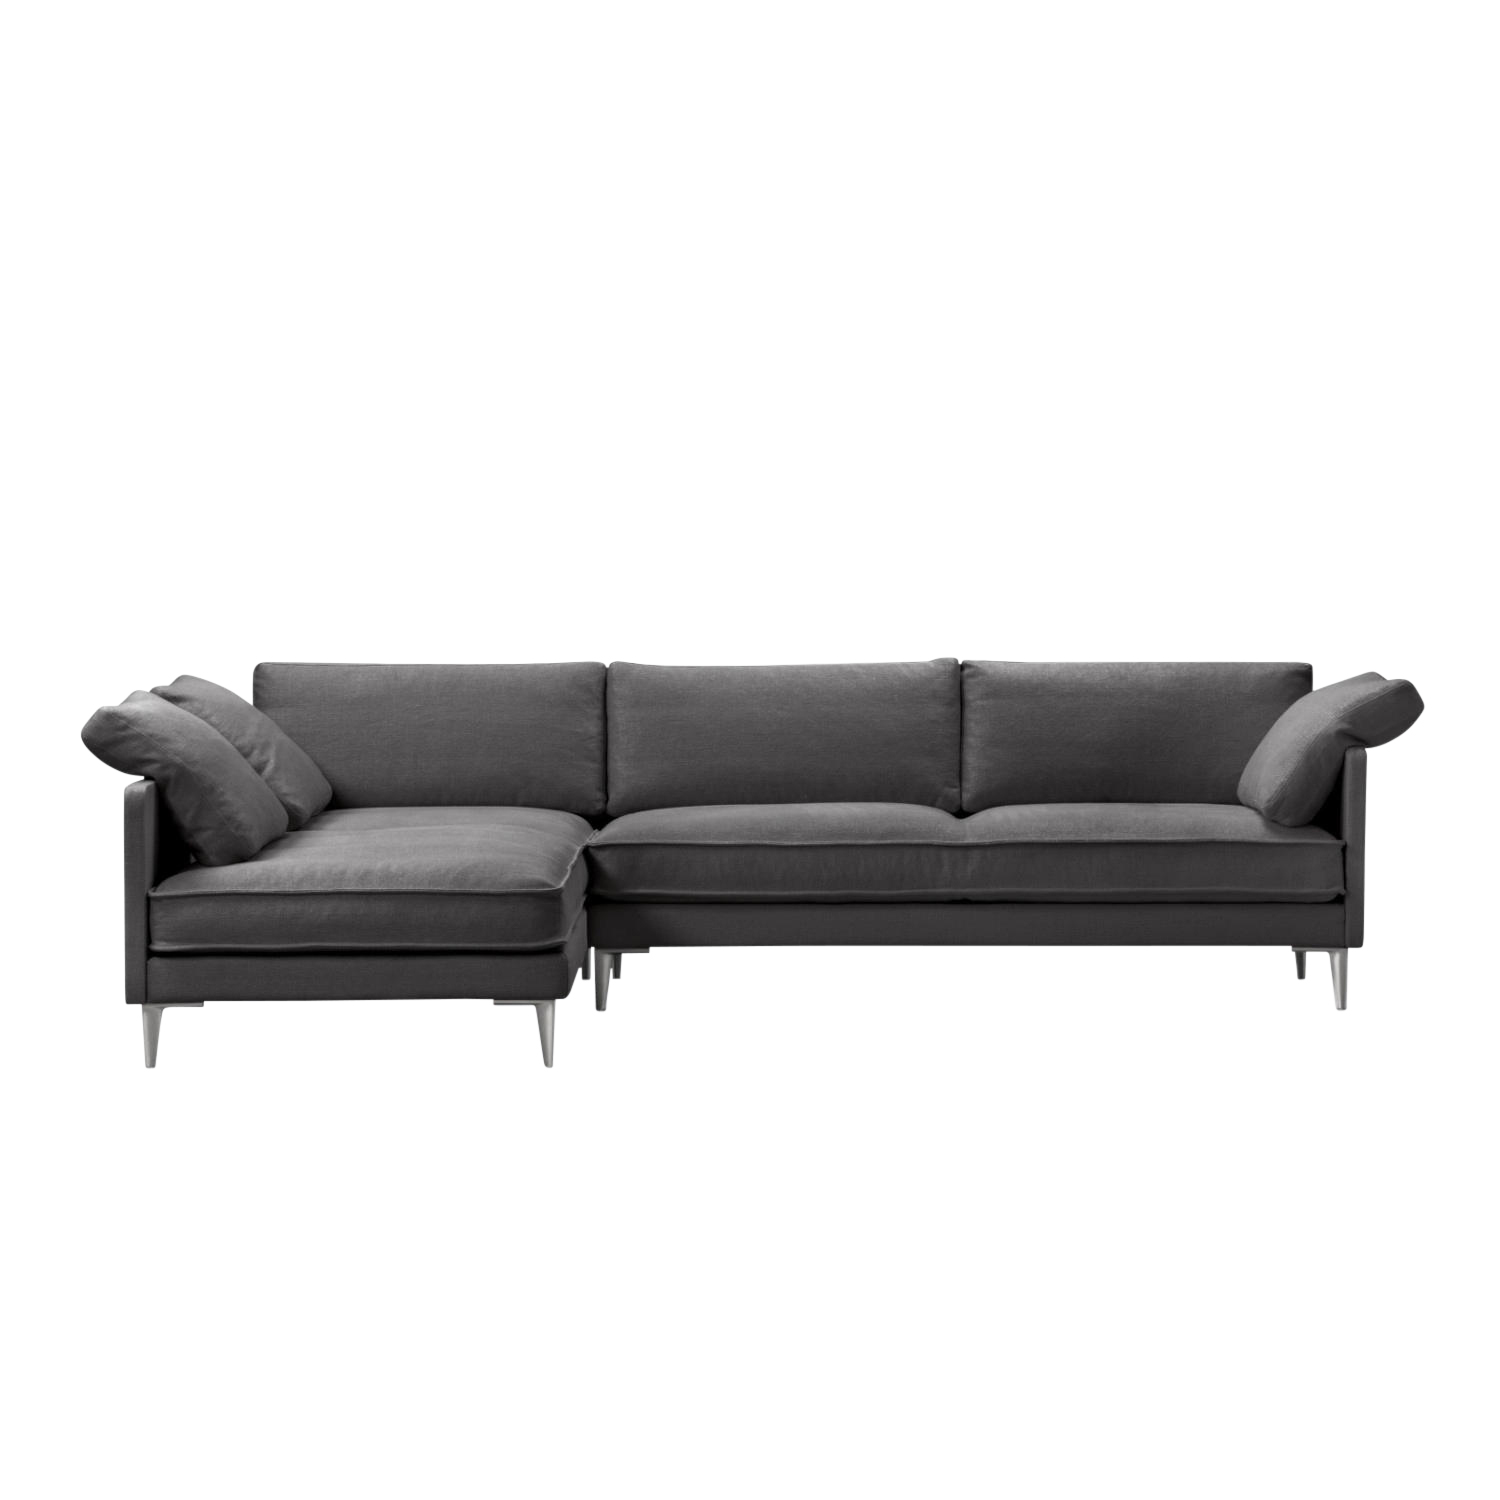 EJ295 Chaise 3er Stoff-Sofa, Bezug stoff remix3 - 672 mocca brown, Grösse b. 240 cm, Chaiselounge links (vor dem sofa stehend), Beine dark grey von Fredericia